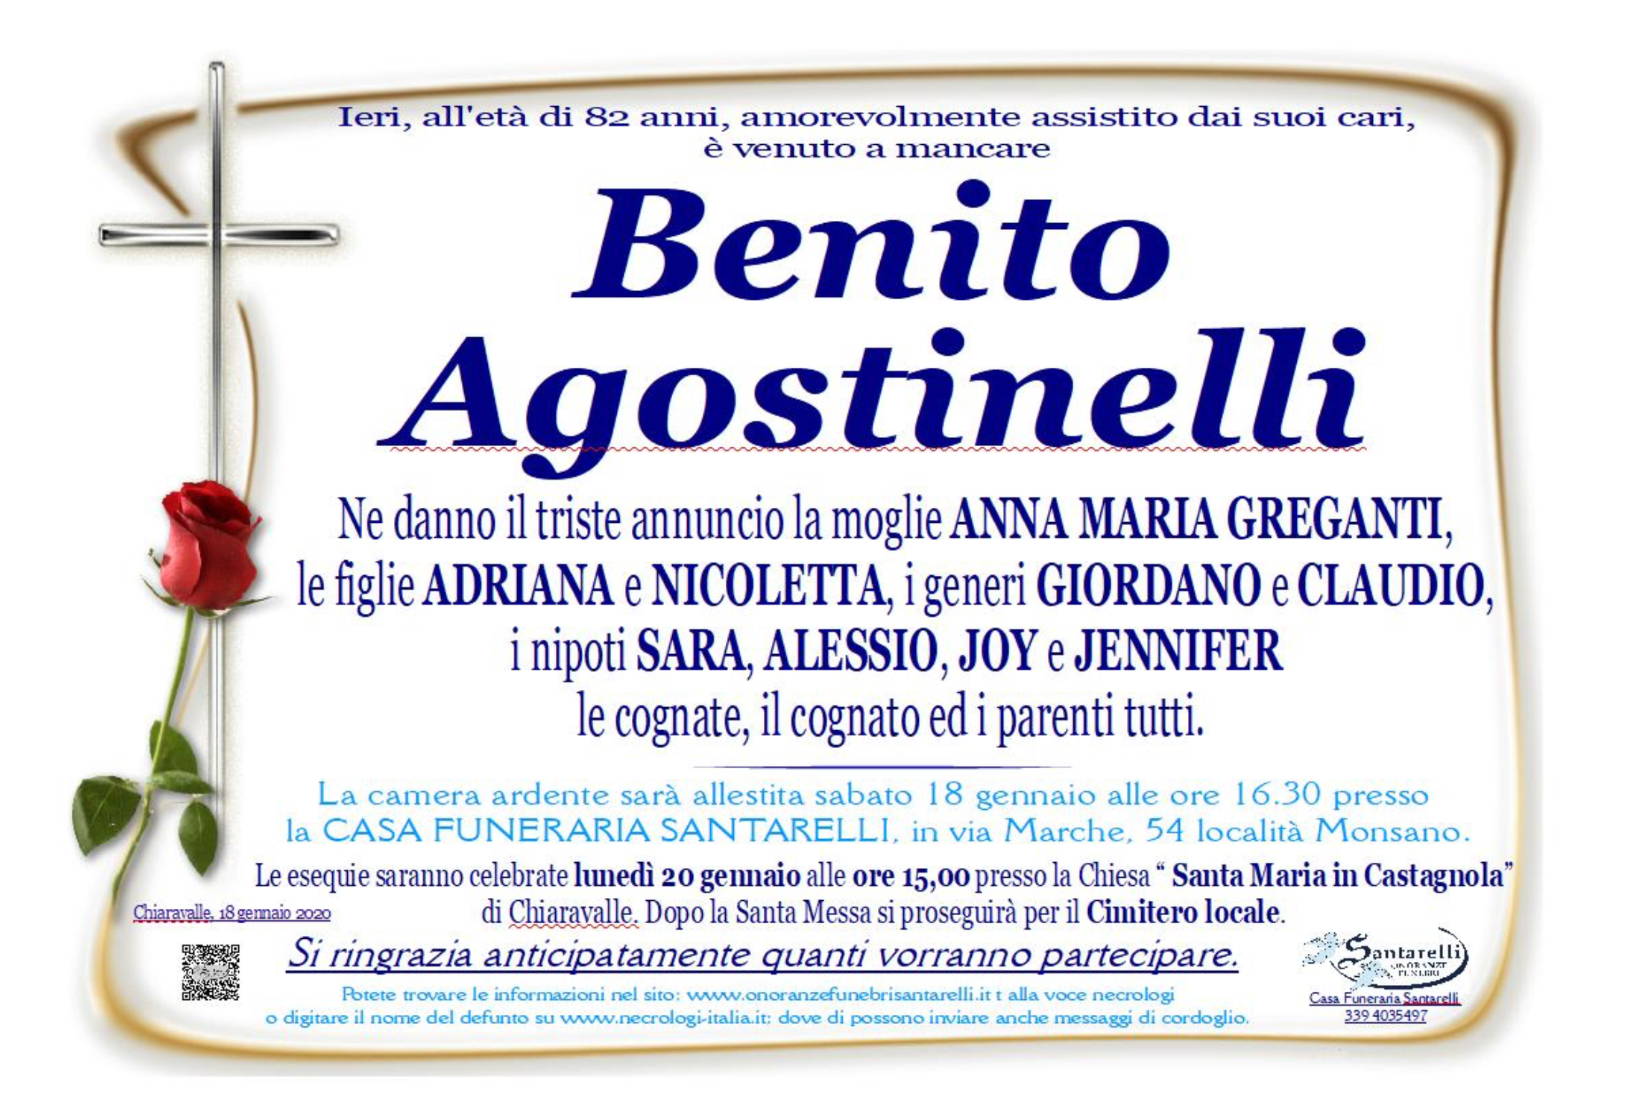 Benito Agostinelli